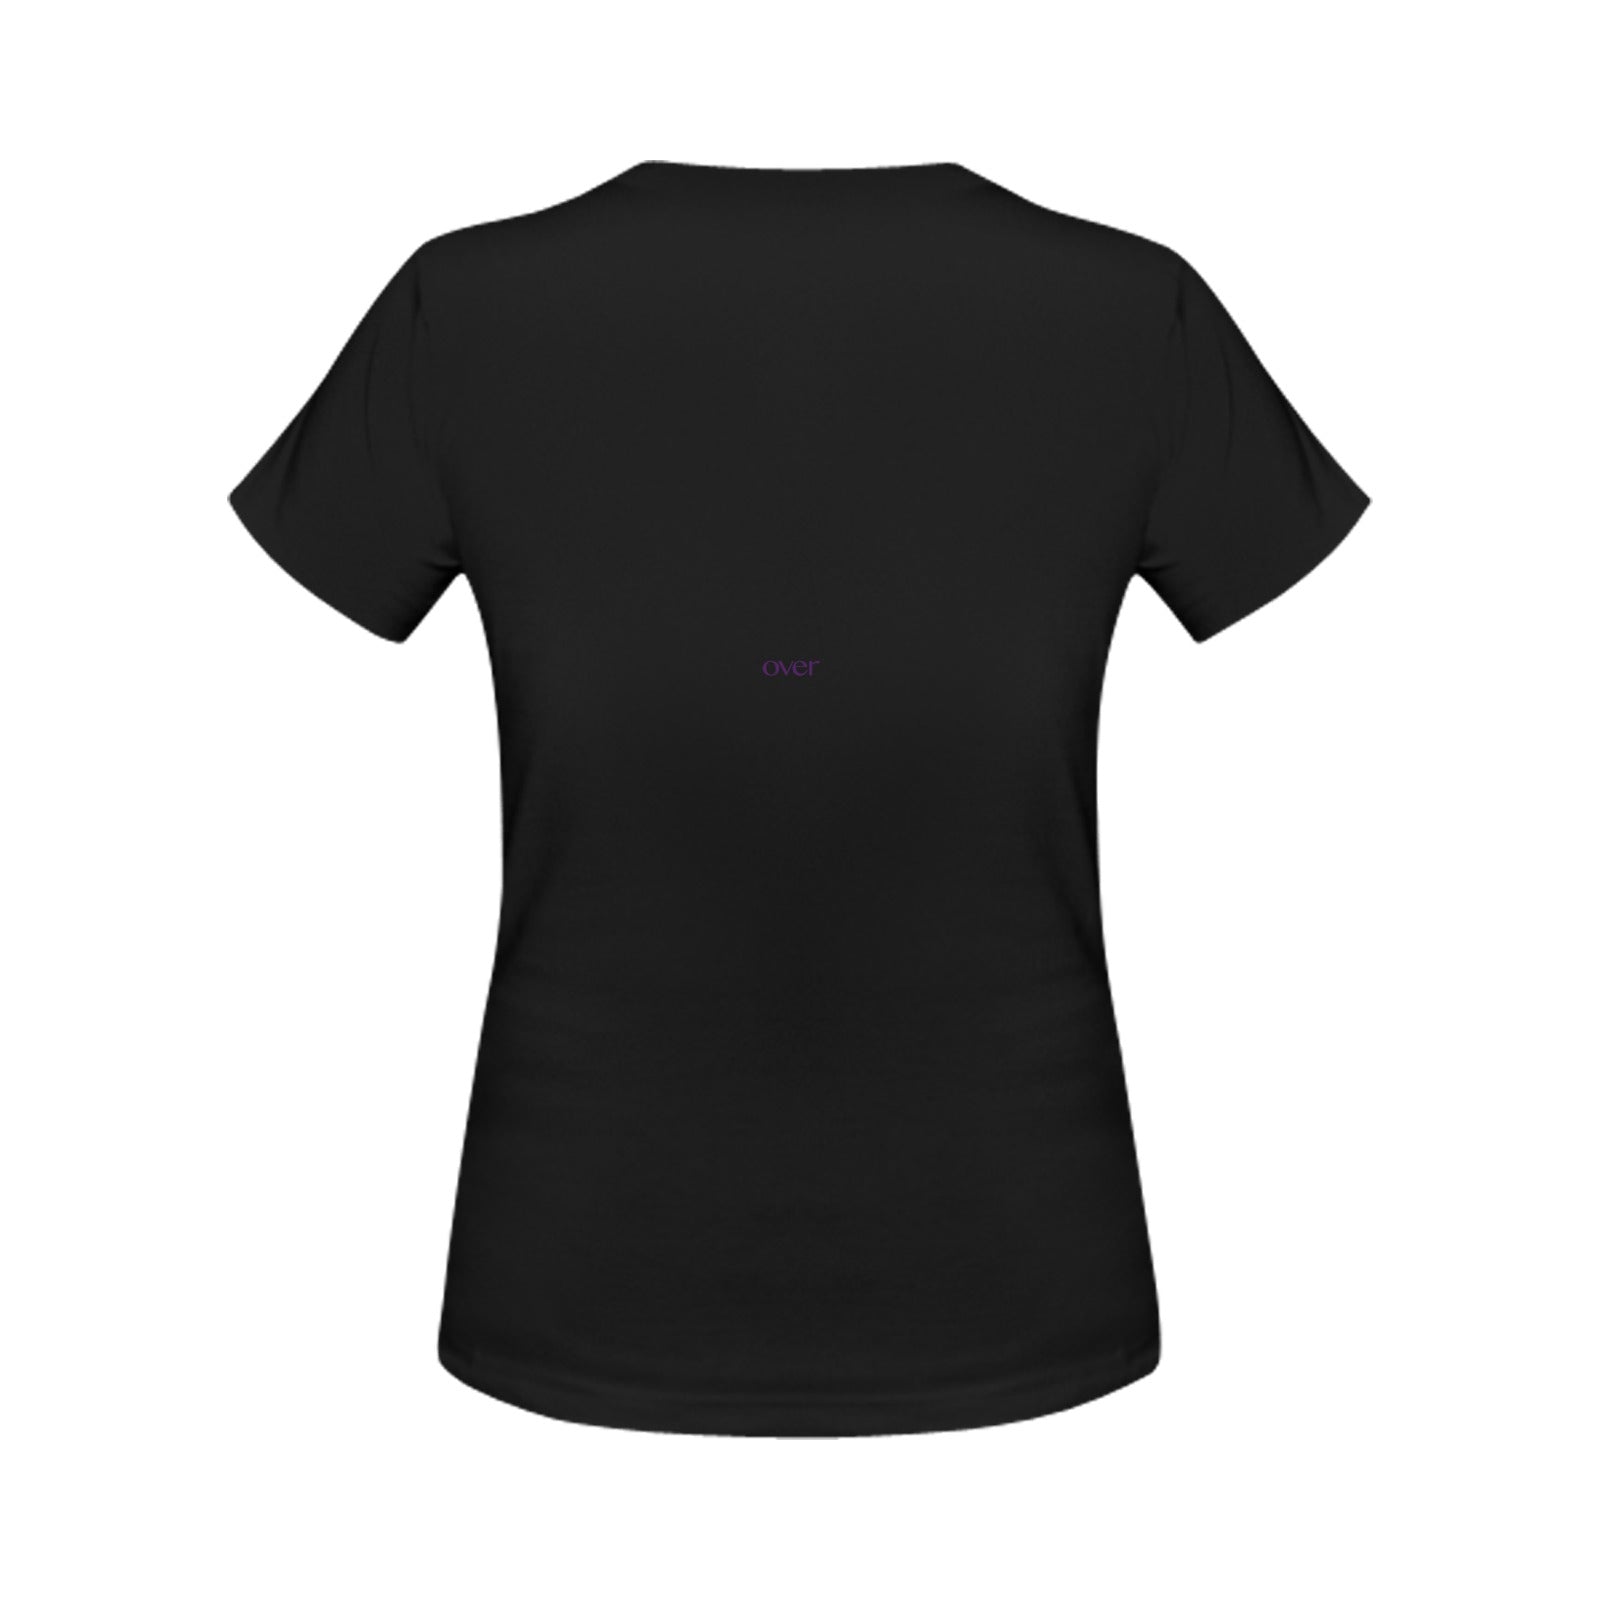 Queen Over Diva Women's T-shirt Black